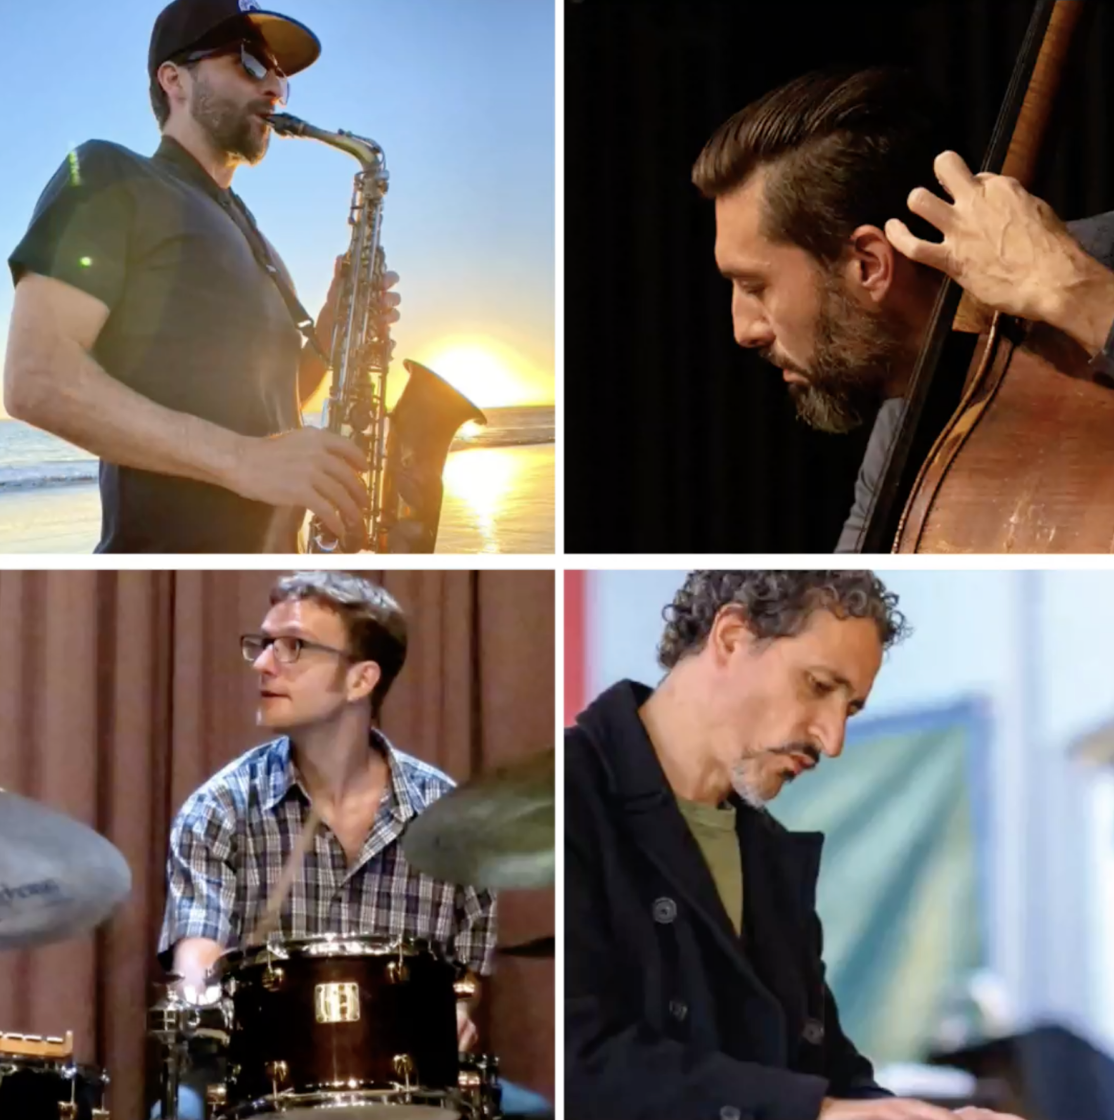 The Horns of San Francisco- The Jesse Levit Quartet